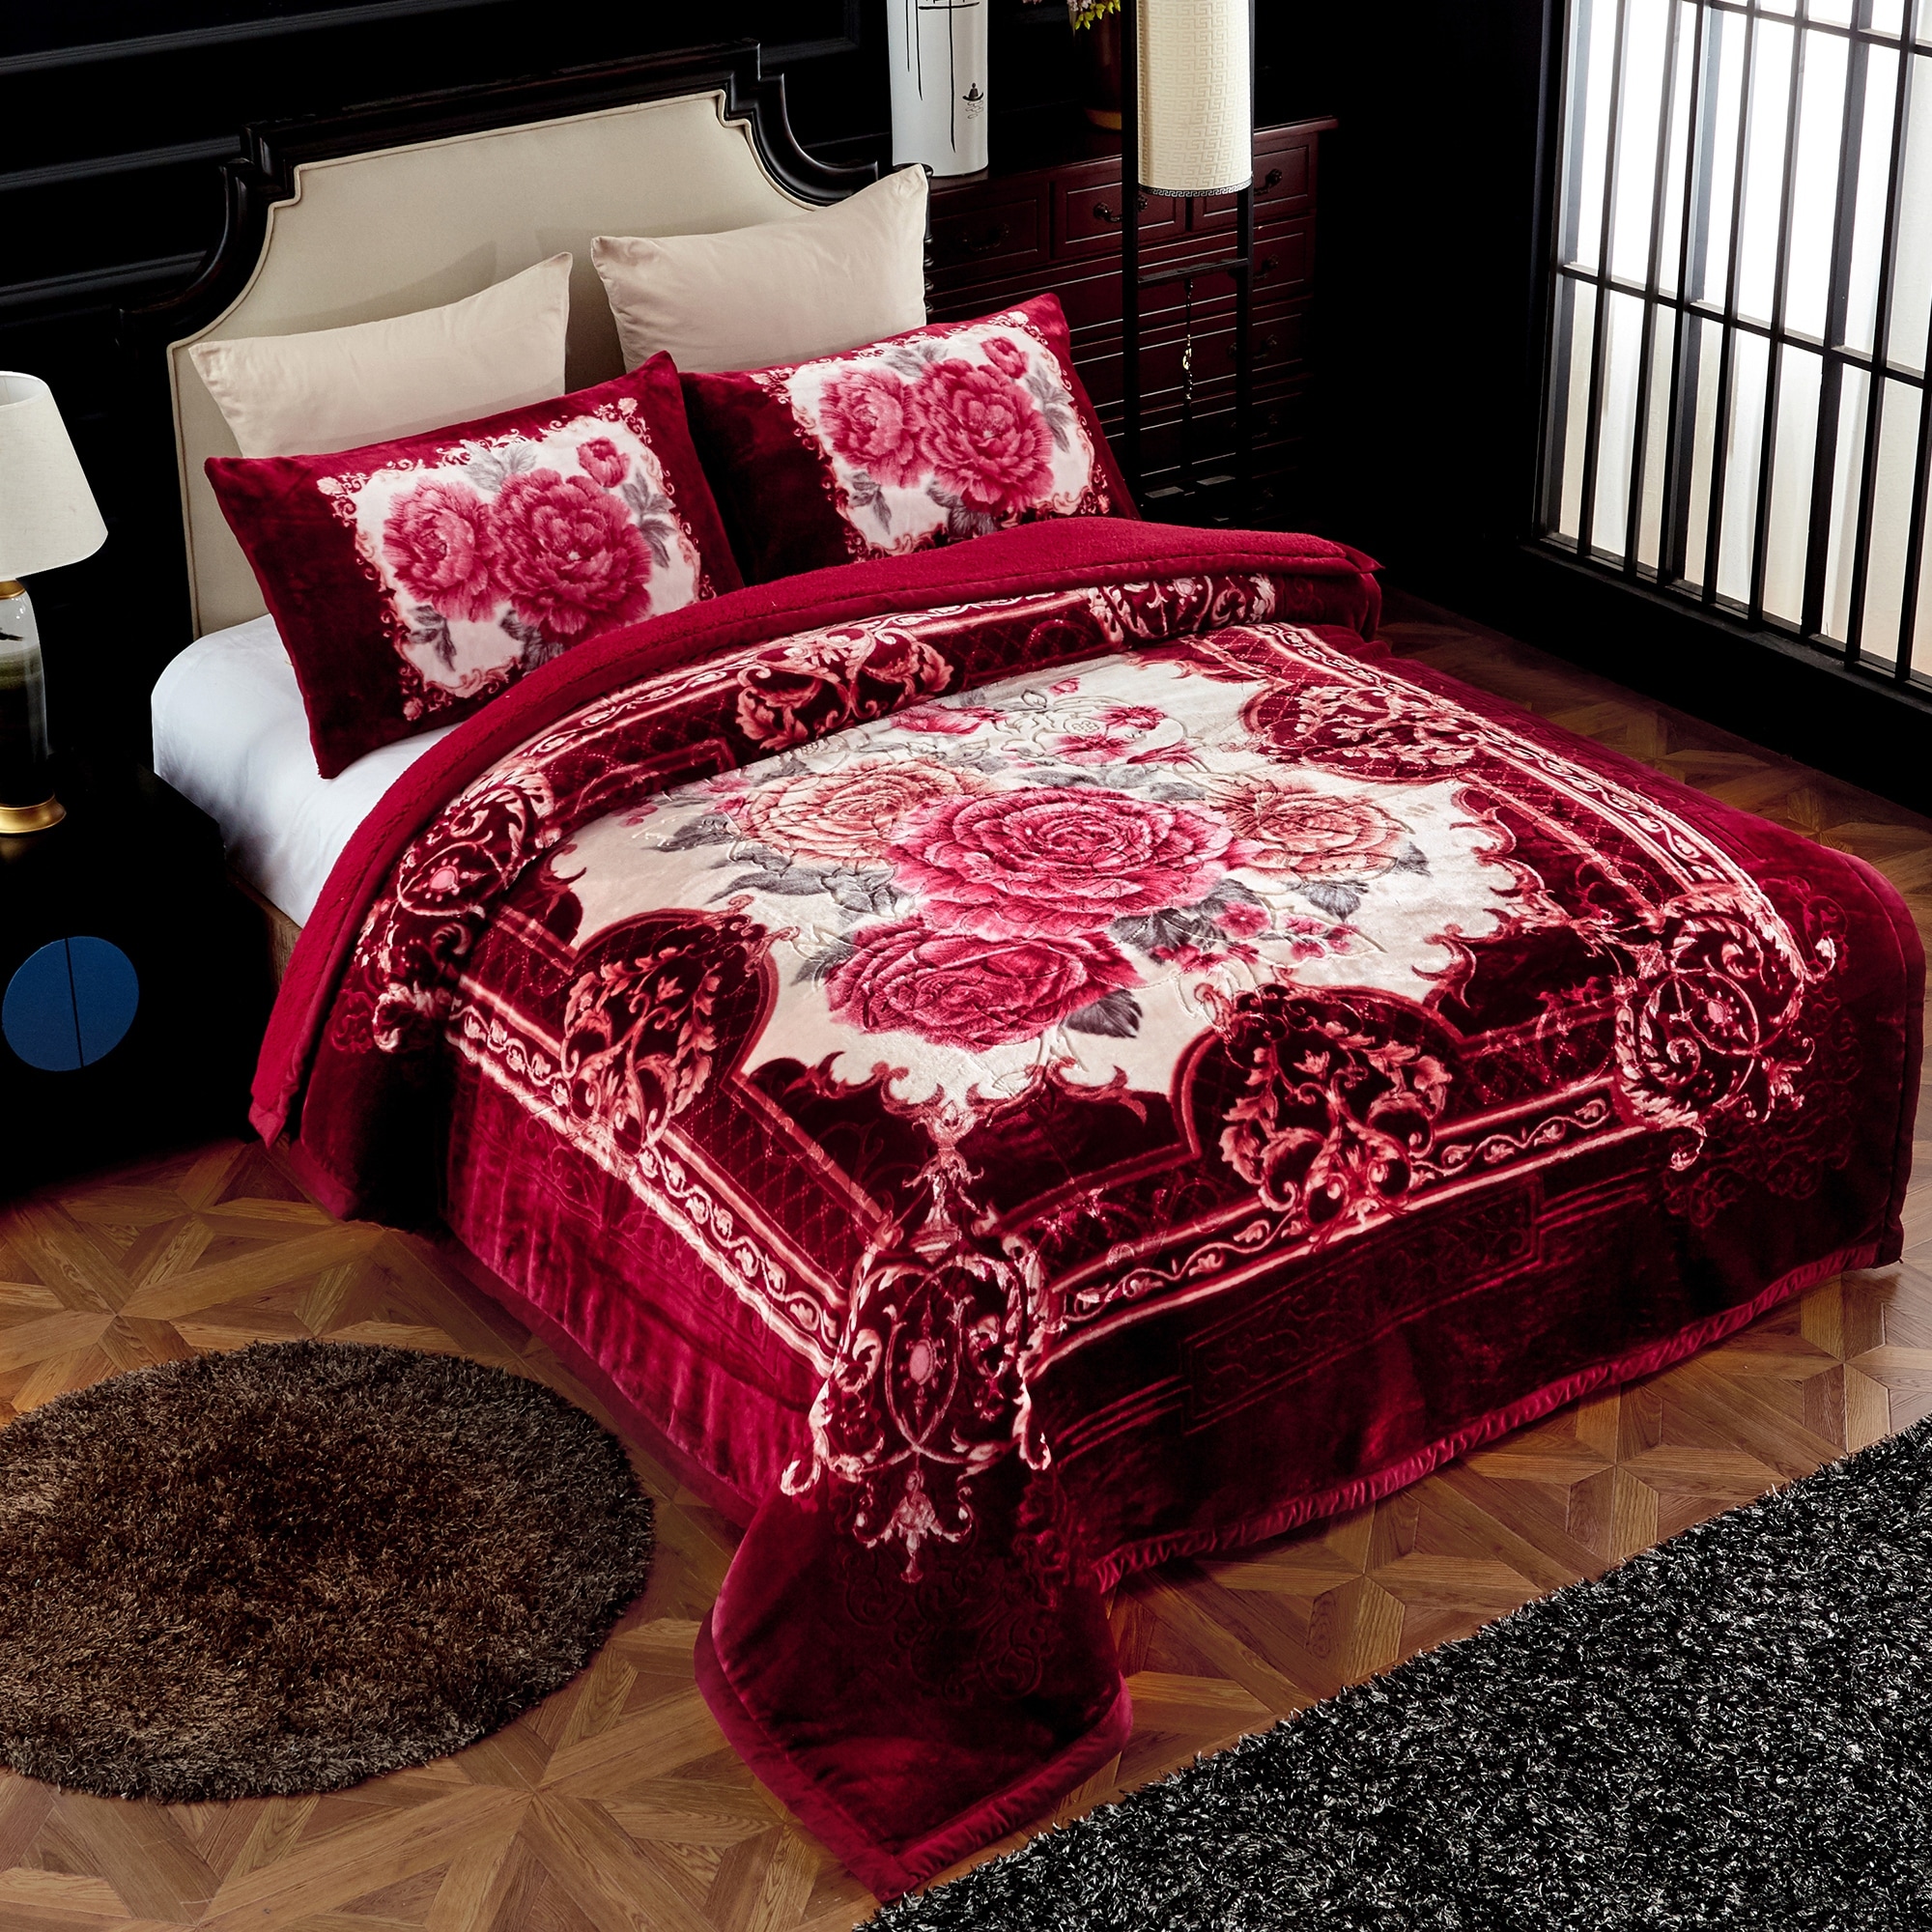 Country Rodeo Cowhide Spot Design Borrego Fleece 3pc Comforter Quick Shipping! 